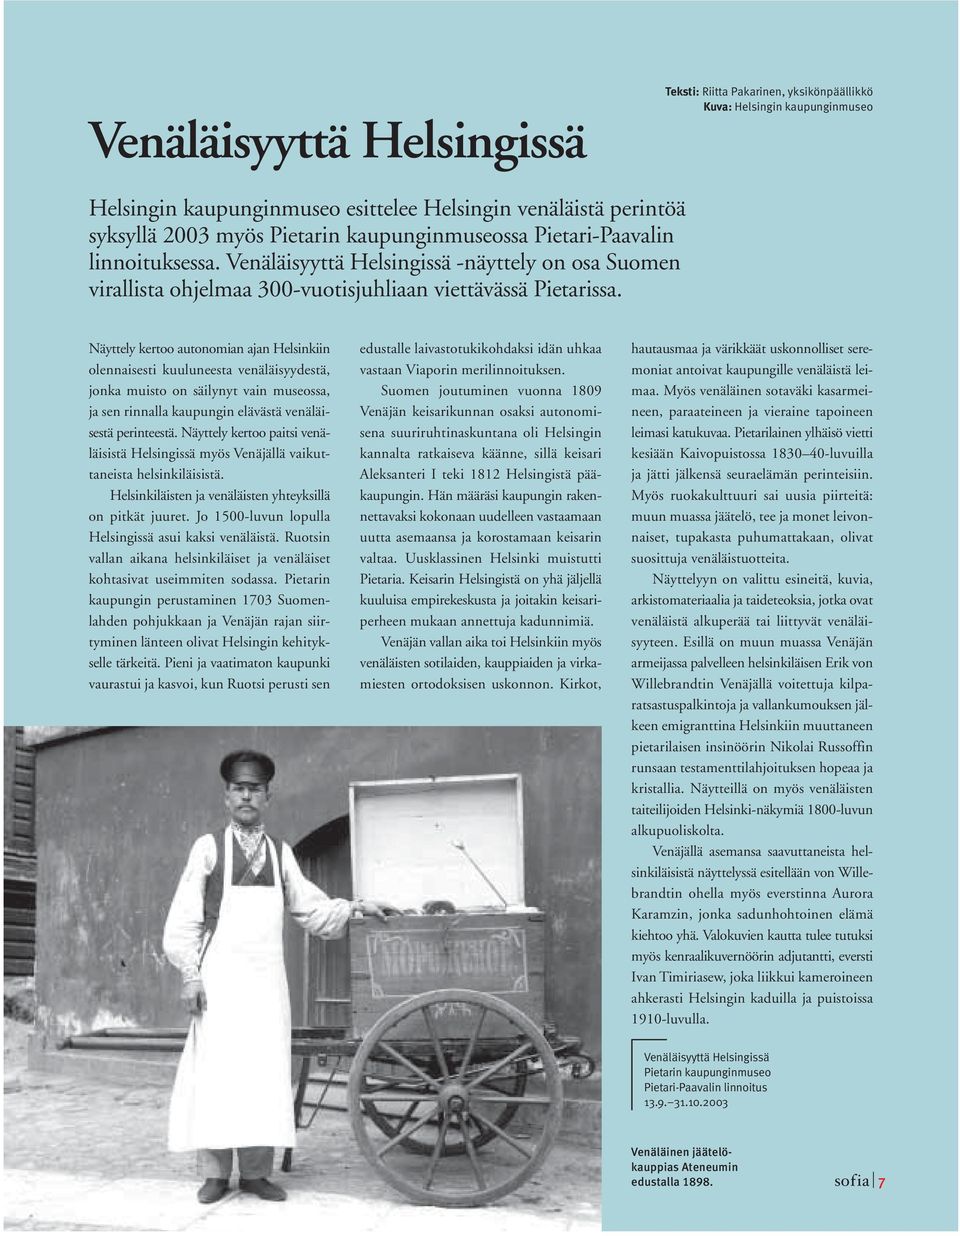 Näyttely kertoo autonomian ajan Helsinkiin olennaisesti kuuluneesta venäläisyydestä, jonka muisto on säilynyt vain museossa, ja sen rinnalla kaupungin elävästä venäläisestä perinteestä.